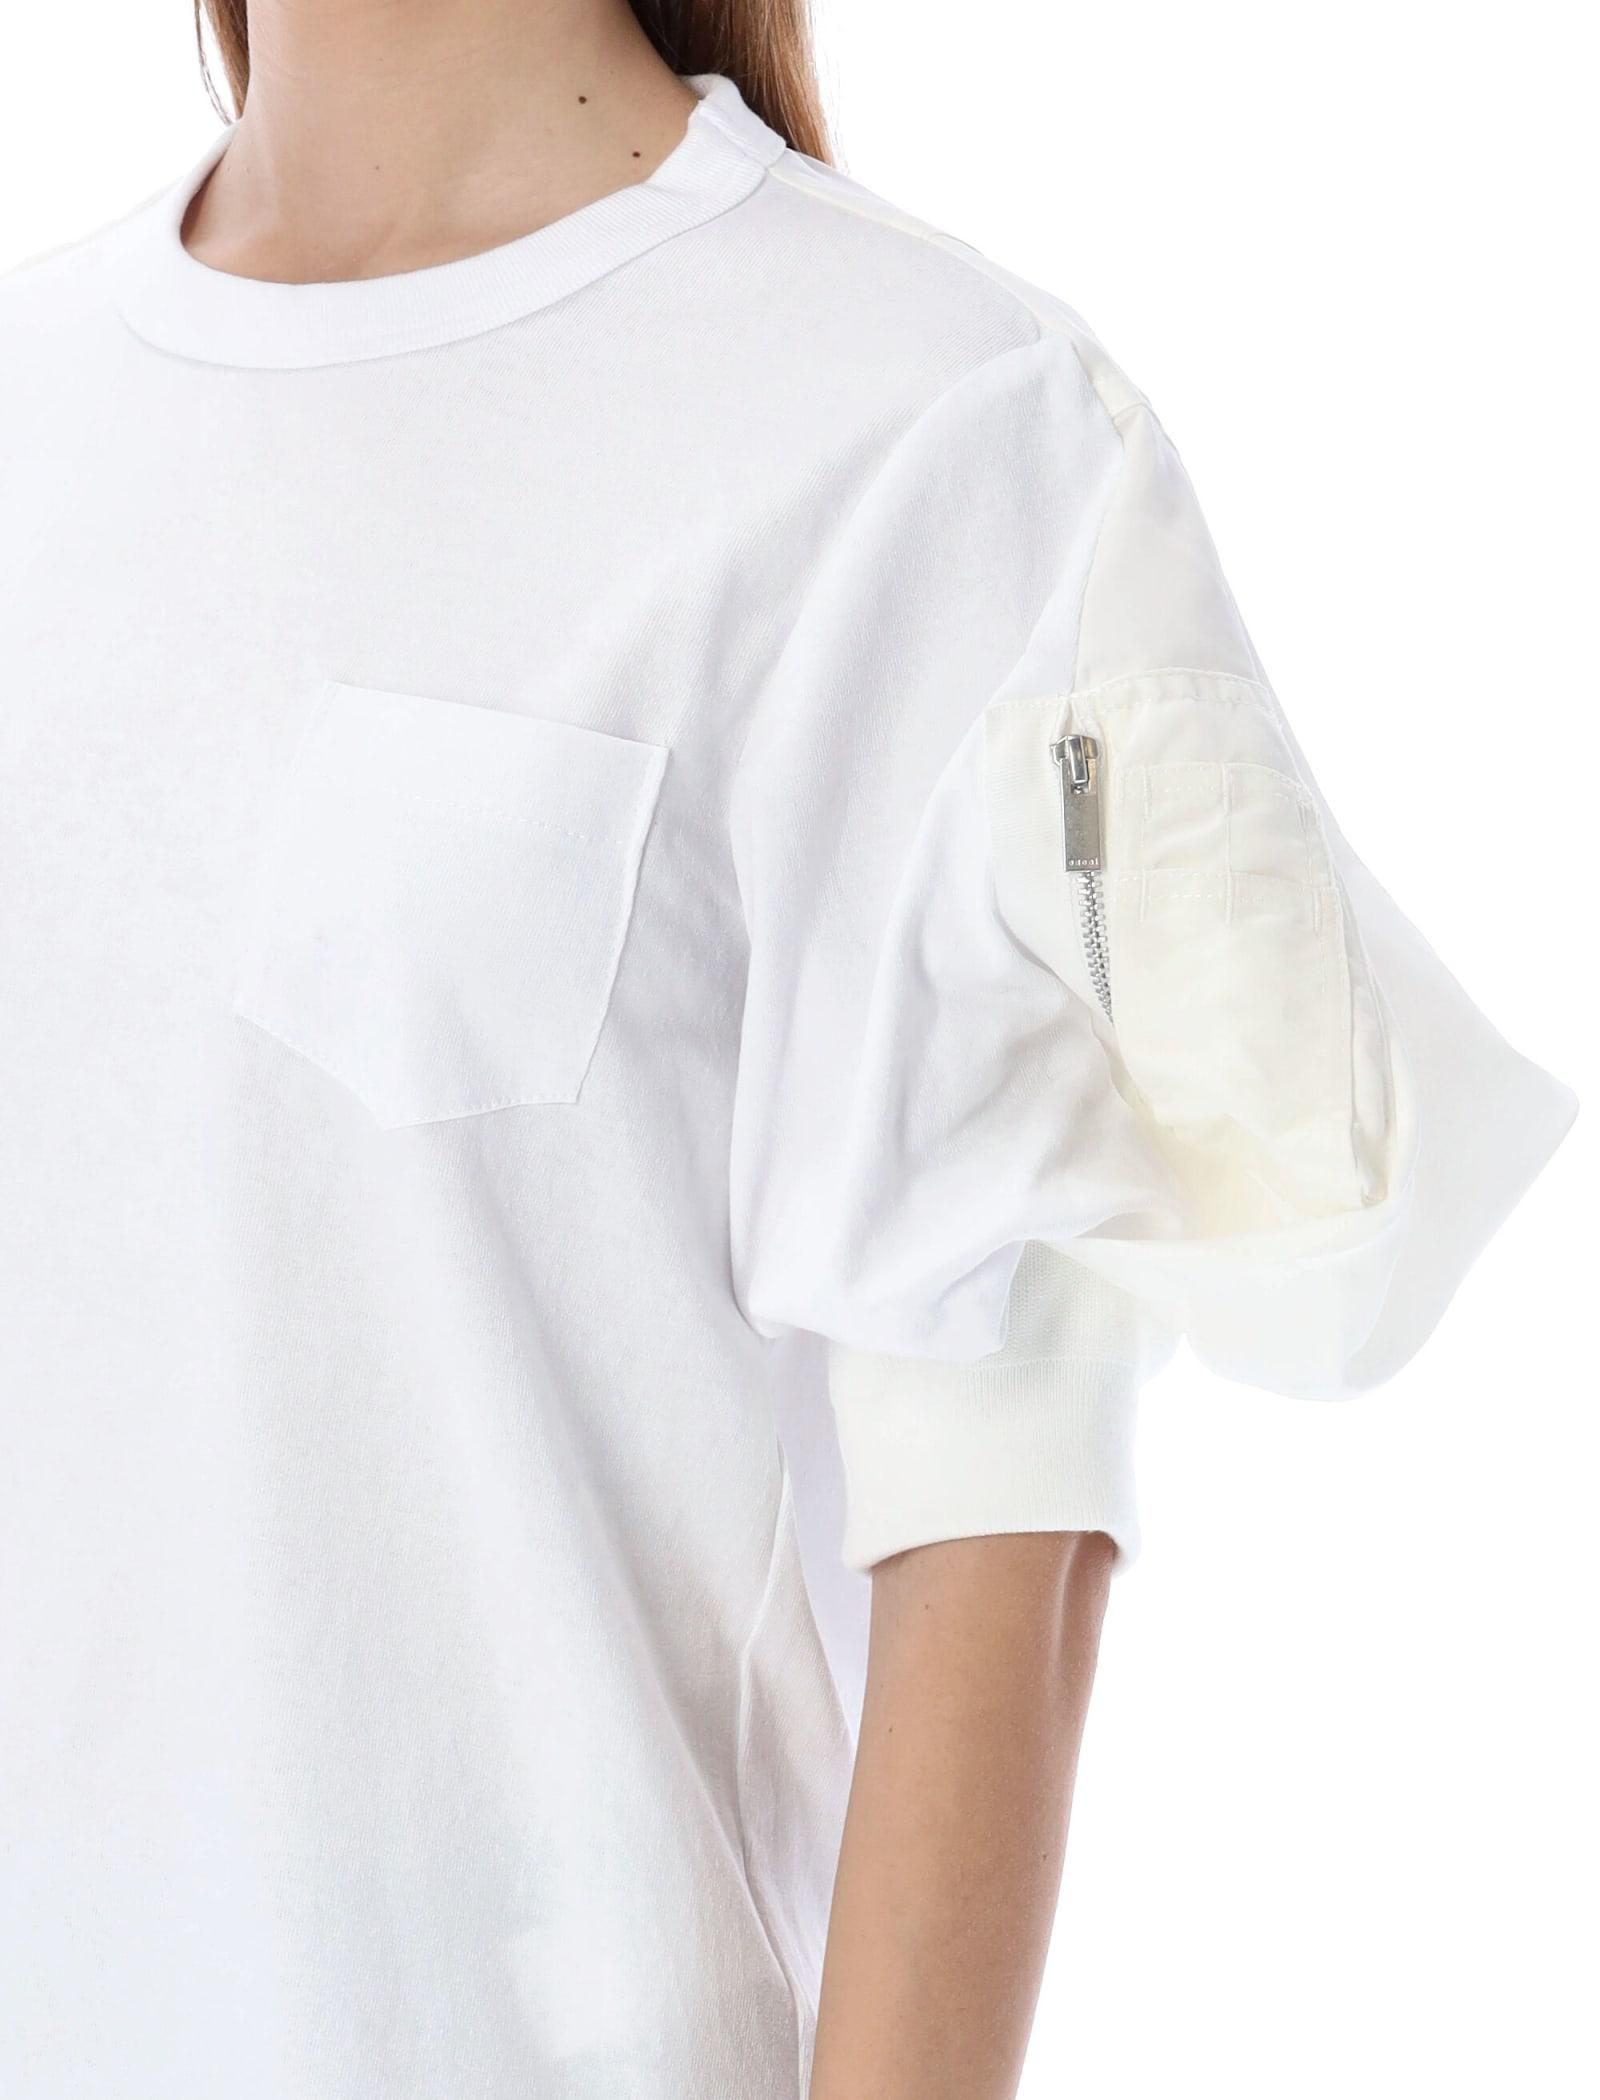 Sacai Puff Sleeve T-shirt in White | Lyst